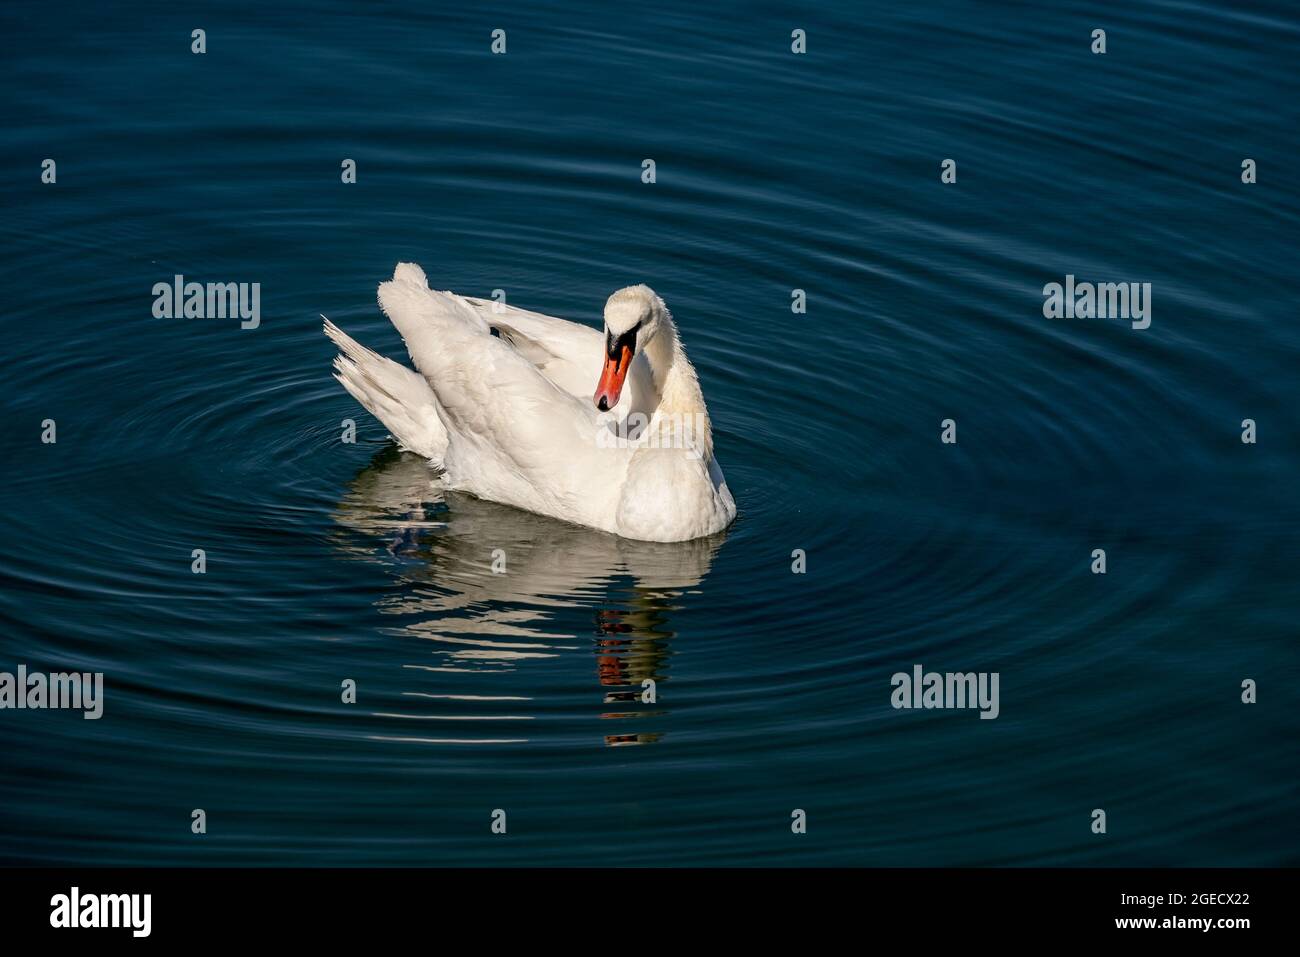 Ein Weißer Schwan auf einem blauen See schwimmend und sich putzend Stock Photo